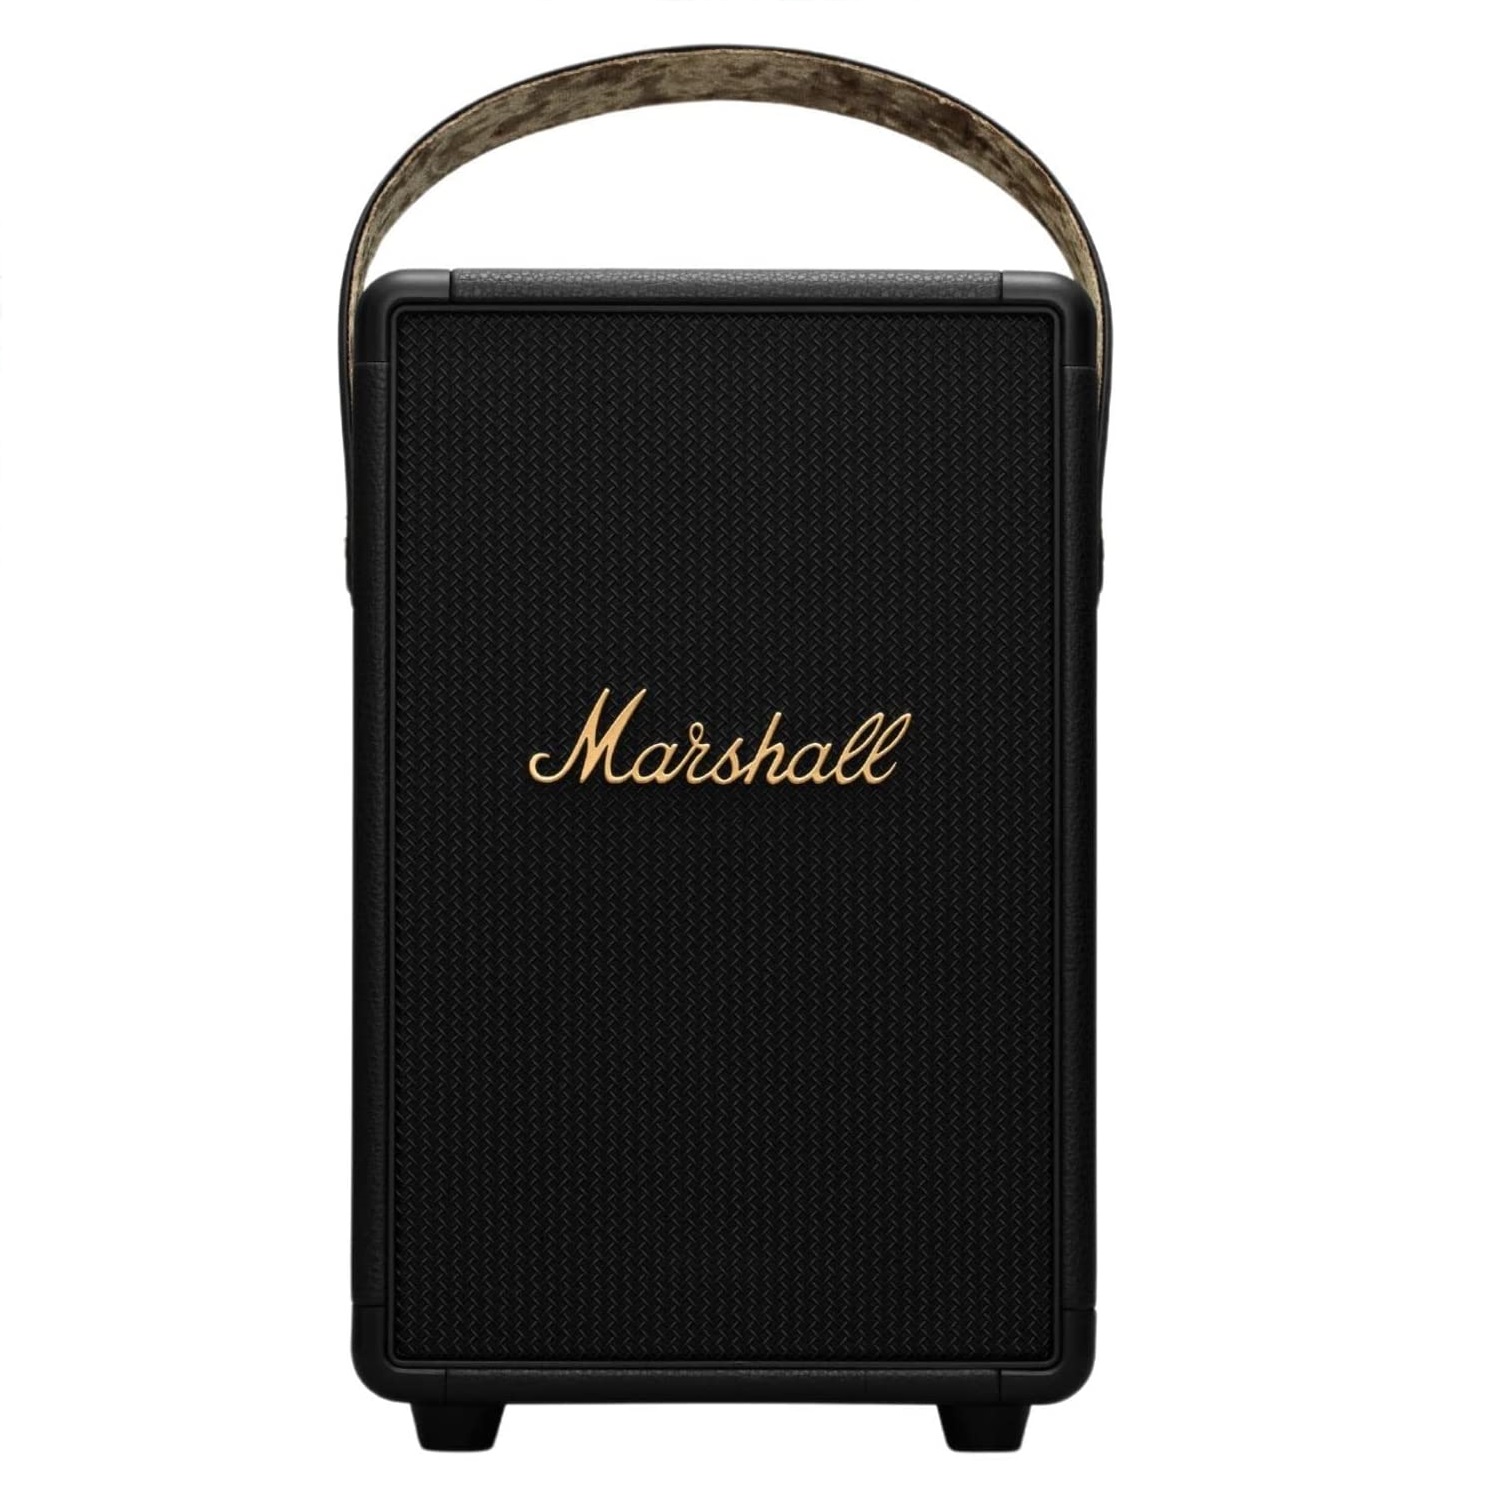 Портативная колонка Marshall Tufton, черный и медь портативная акустика marshall tufton черный